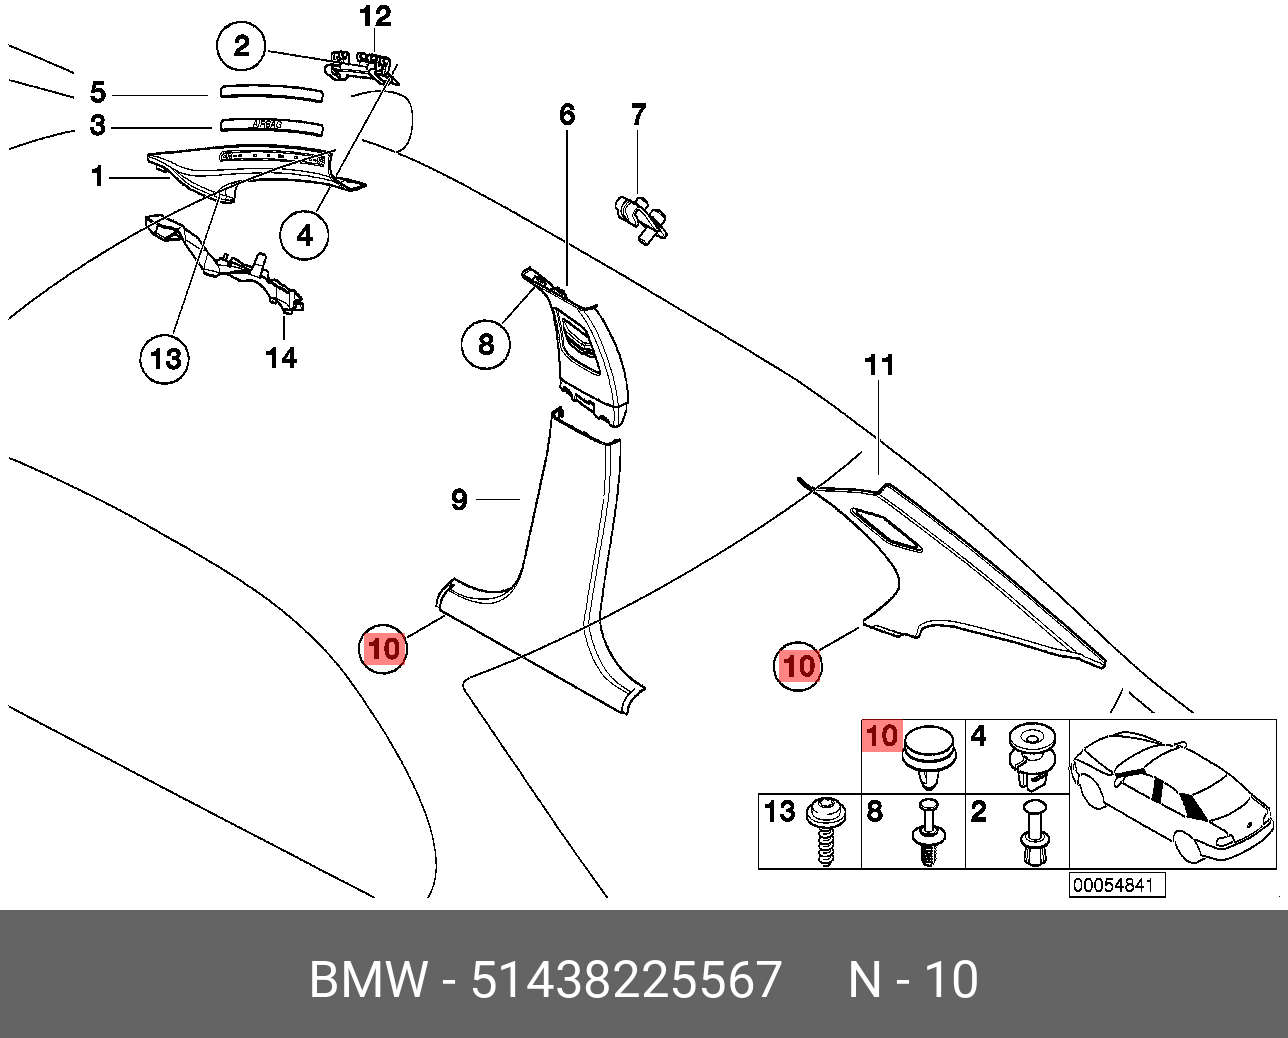 1 43 8. Щиток накладки передней стойки e46. Клипсы отделки салона BMW e46. Крепление накладки стойки переднего ветрового стекла Дискавери 4. БМВ е46 передняя накладка стойки салона.